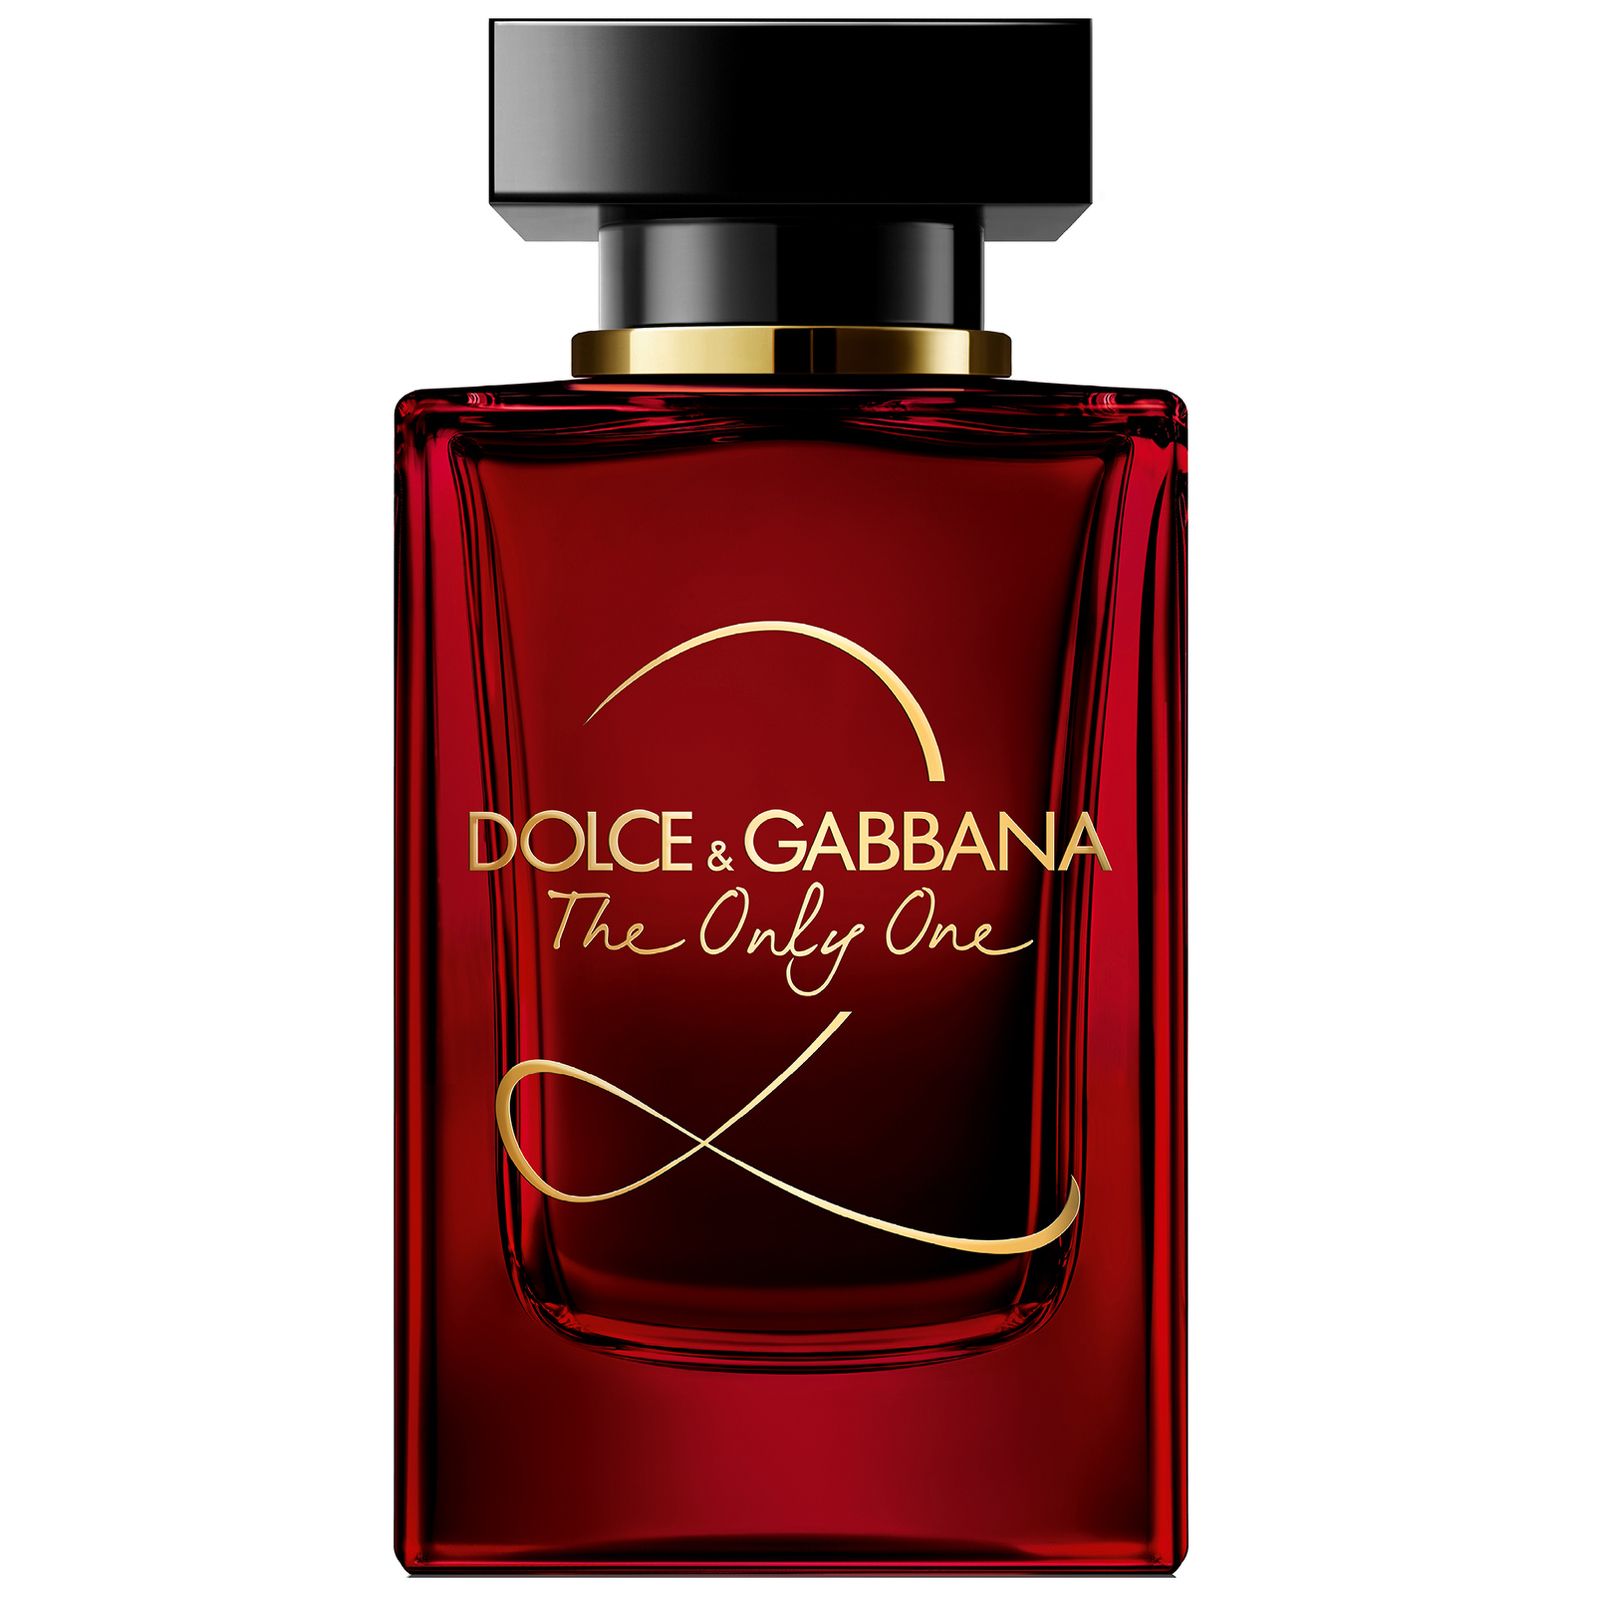 Аромат дольче габбана отзывы. Dolce Gabbana the only one 2 100 мл. Dolce& Gabbana the only one 2 EDP, 100 ml. Dolce Gabbana the only one 2 30 мл. Dolce & Gabbana the only one, EDP., 100 ml.